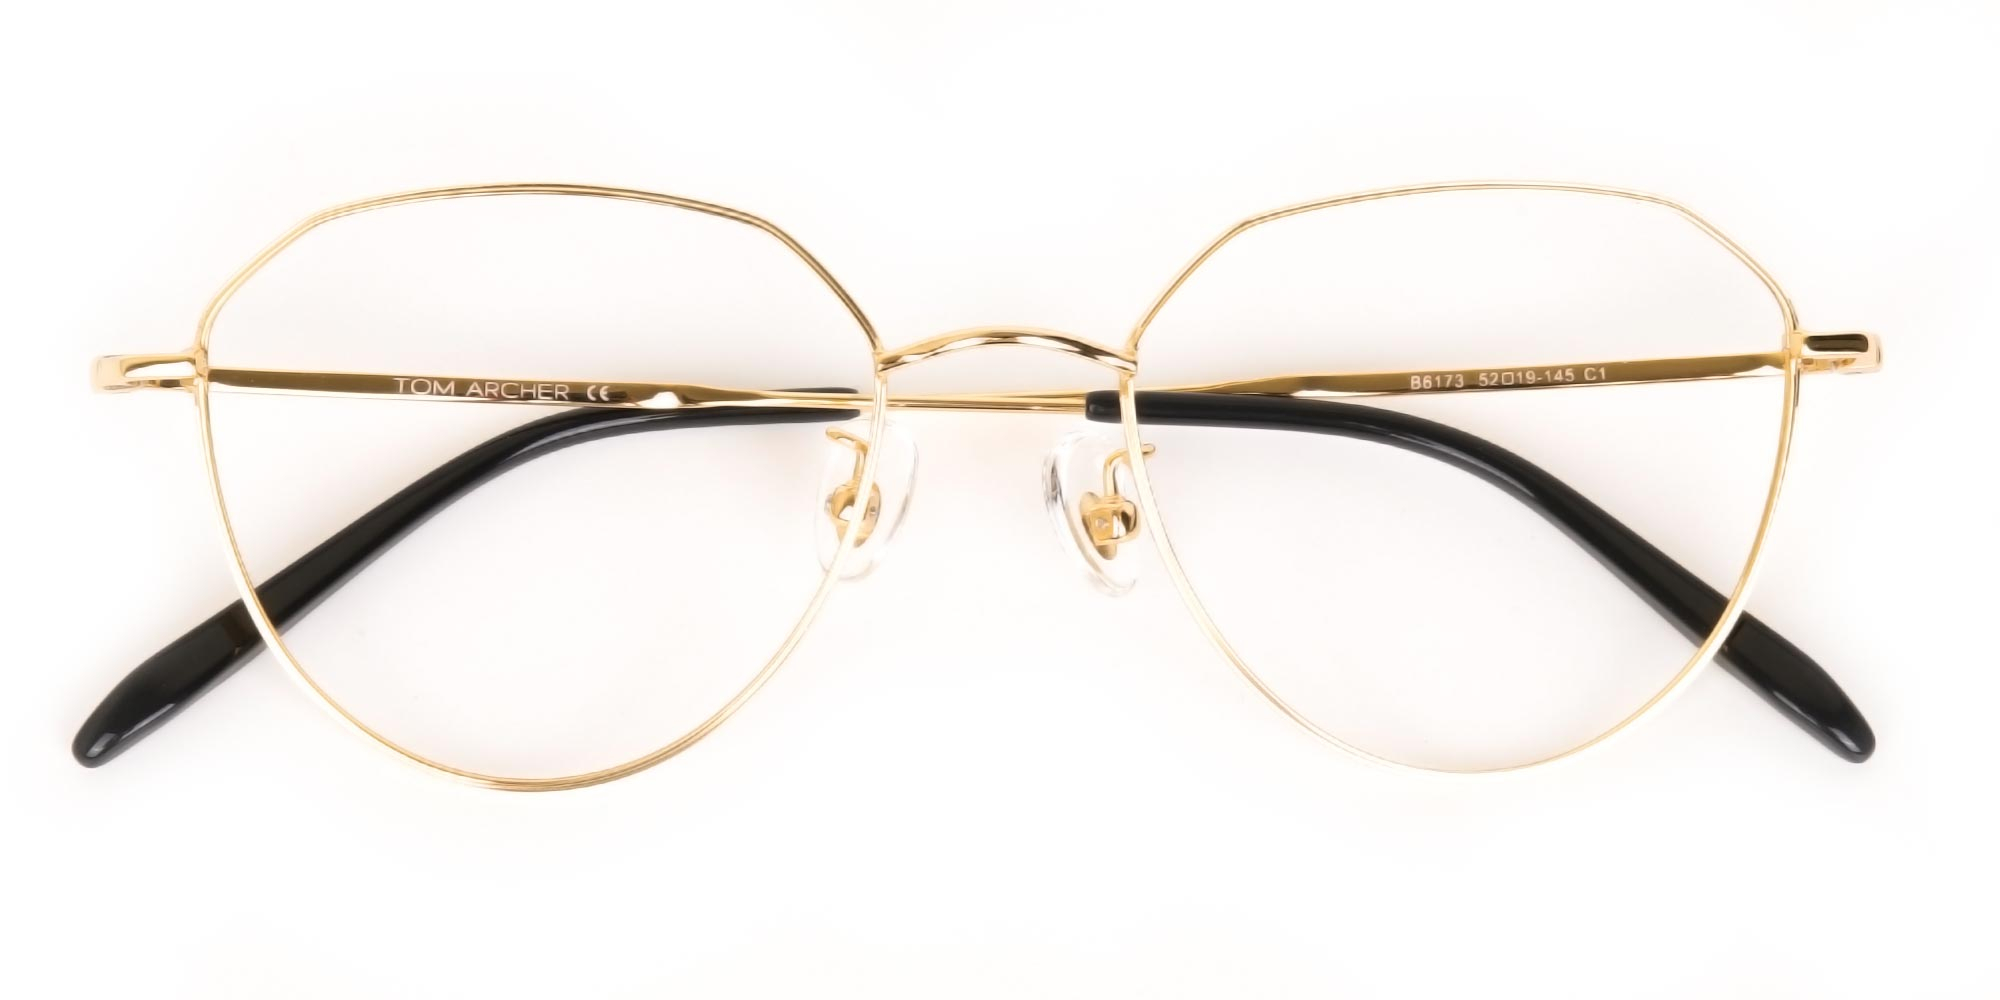 Gold Metal Aviator Glasses Frame For Unisex-1